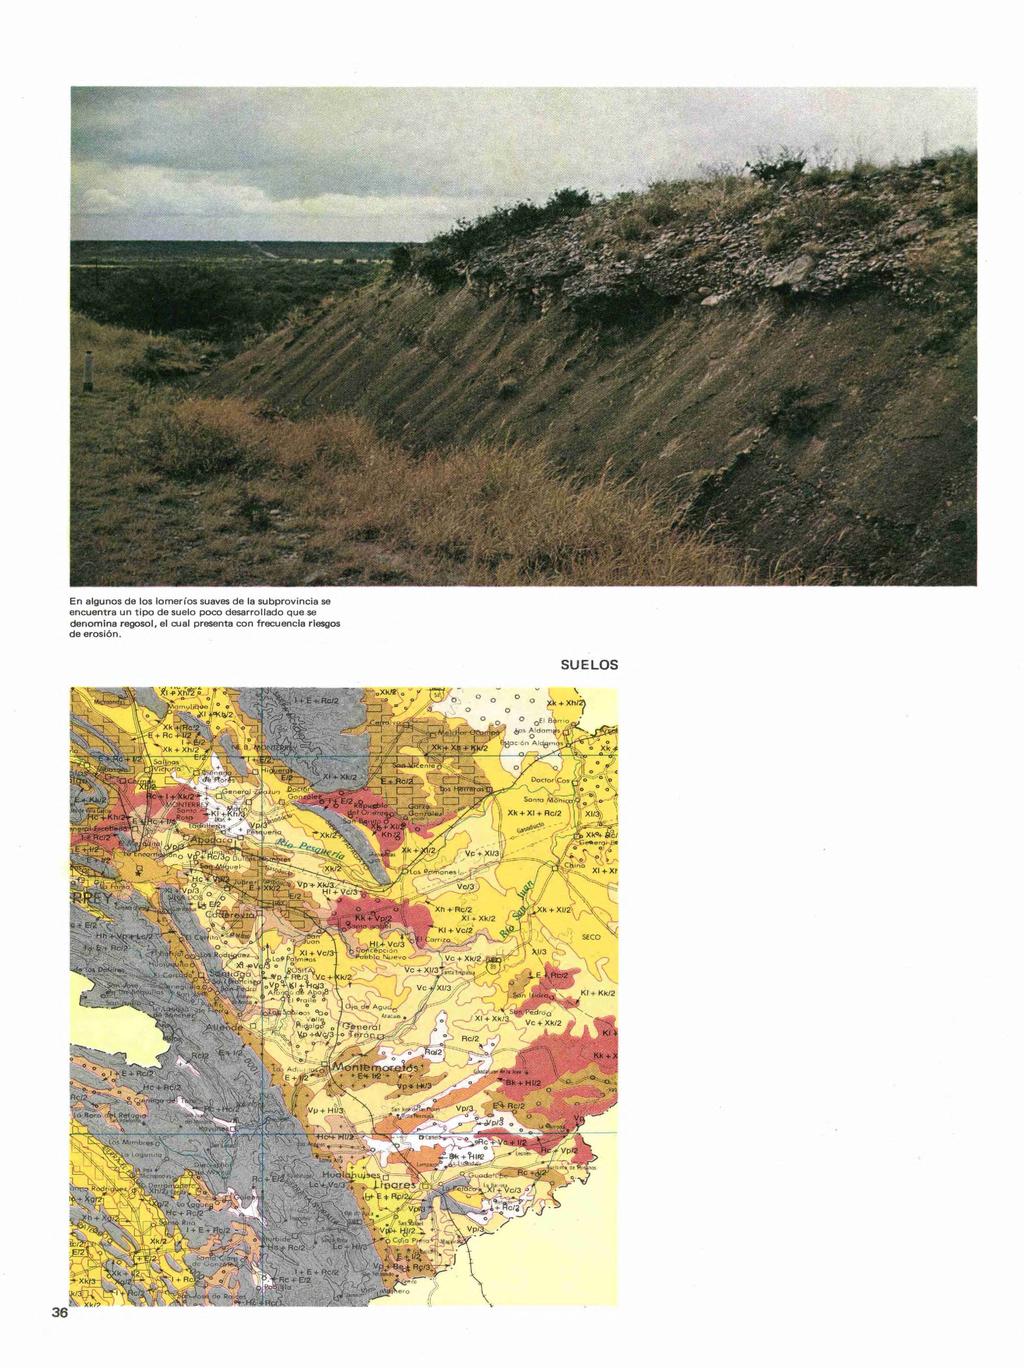 En algunos de los lomeríos suaves de la subprovincia se encuentra un tipo de suelo poco desarrollado que se denomina regosol, el cual presenta con frecuencia riesgos de erosión.